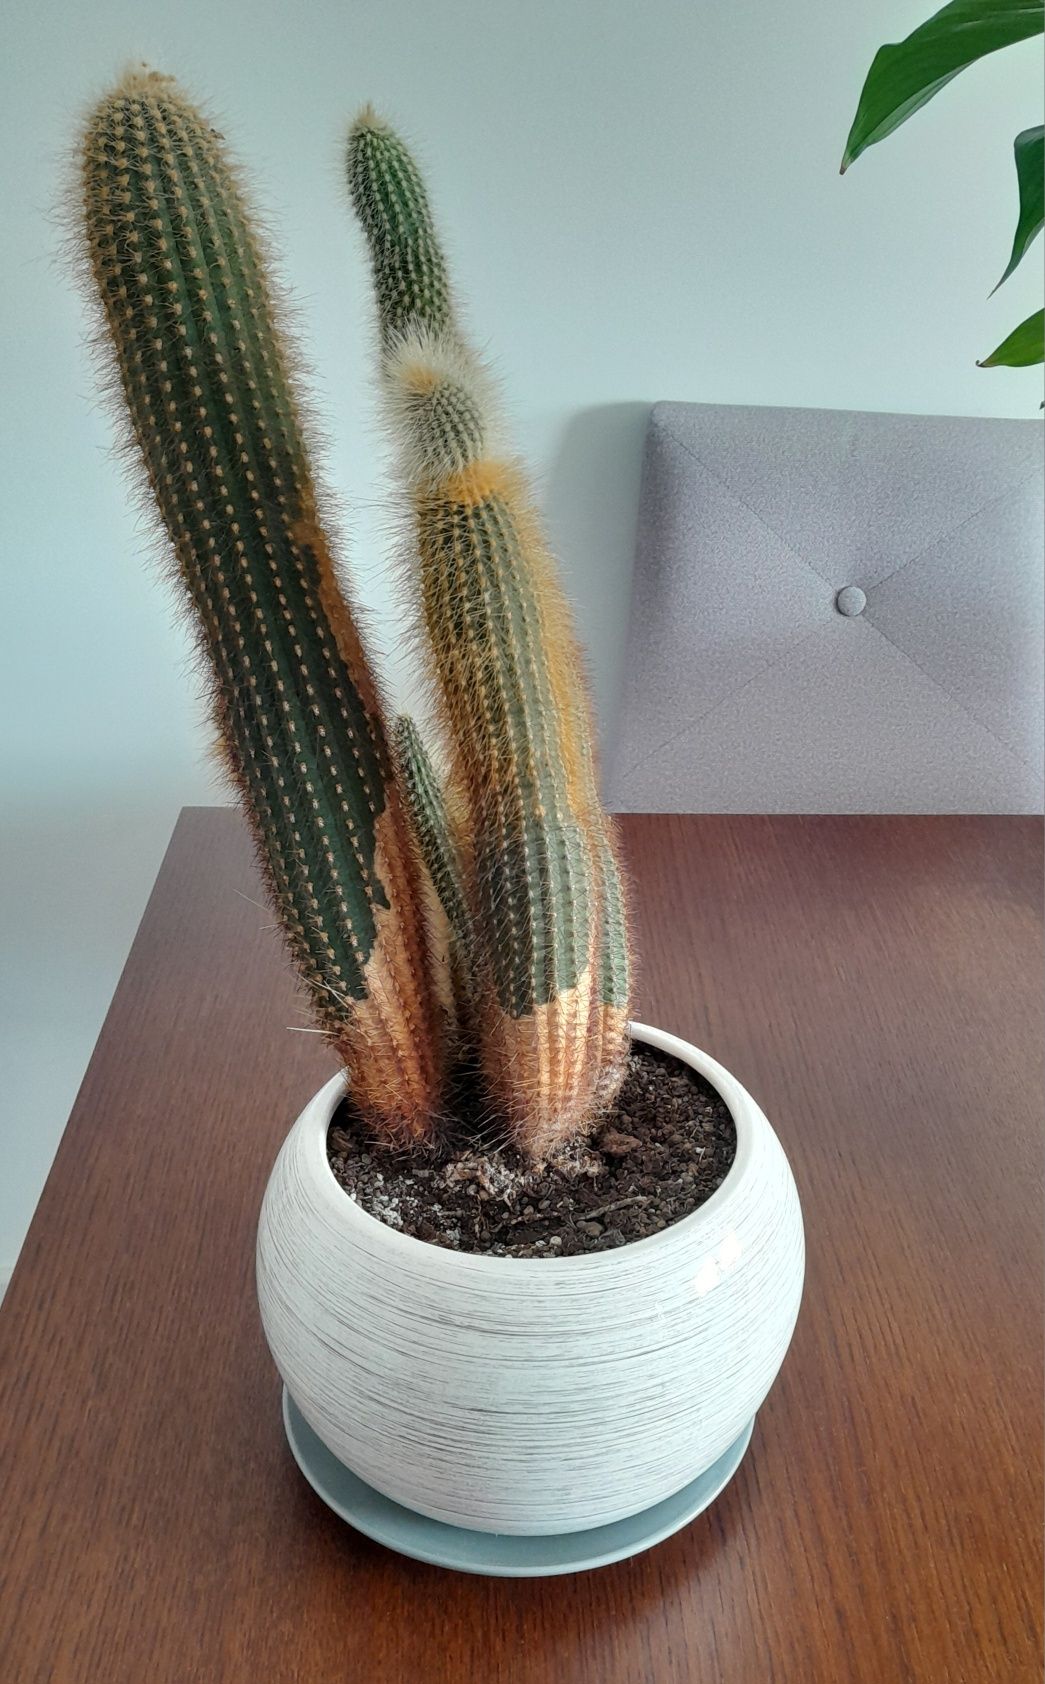 Kaktus z doniczką